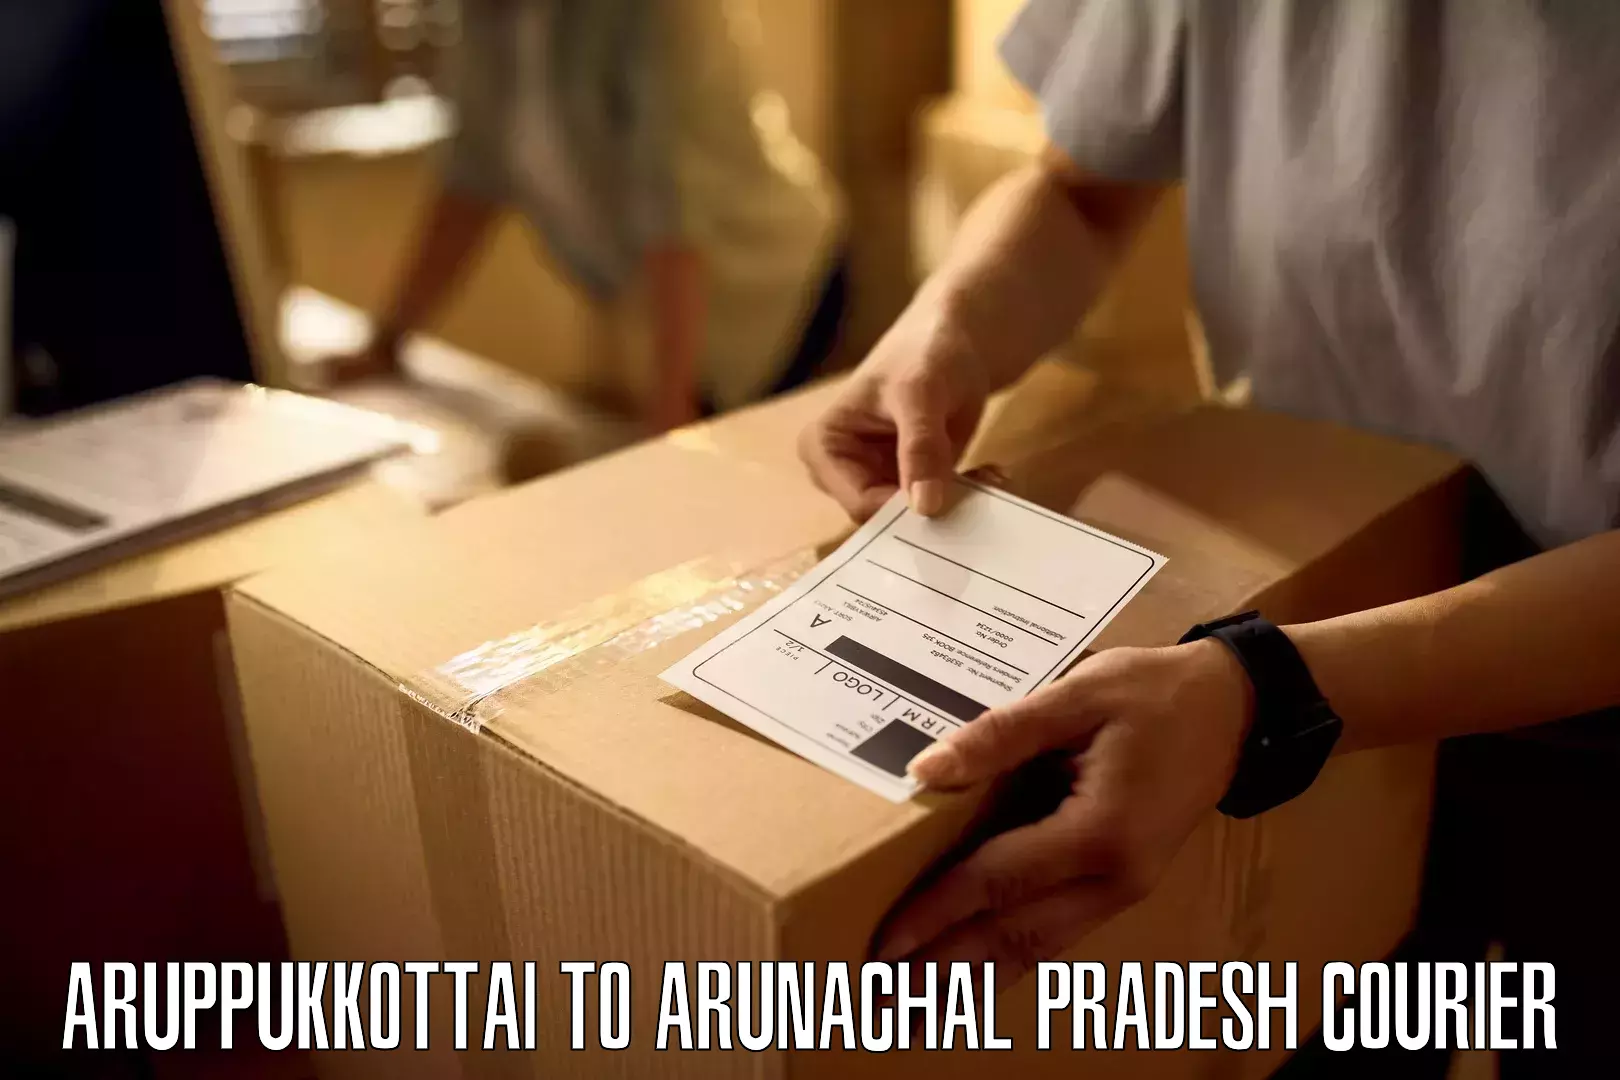 Next-generation courier services Aruppukkottai to Chowkham